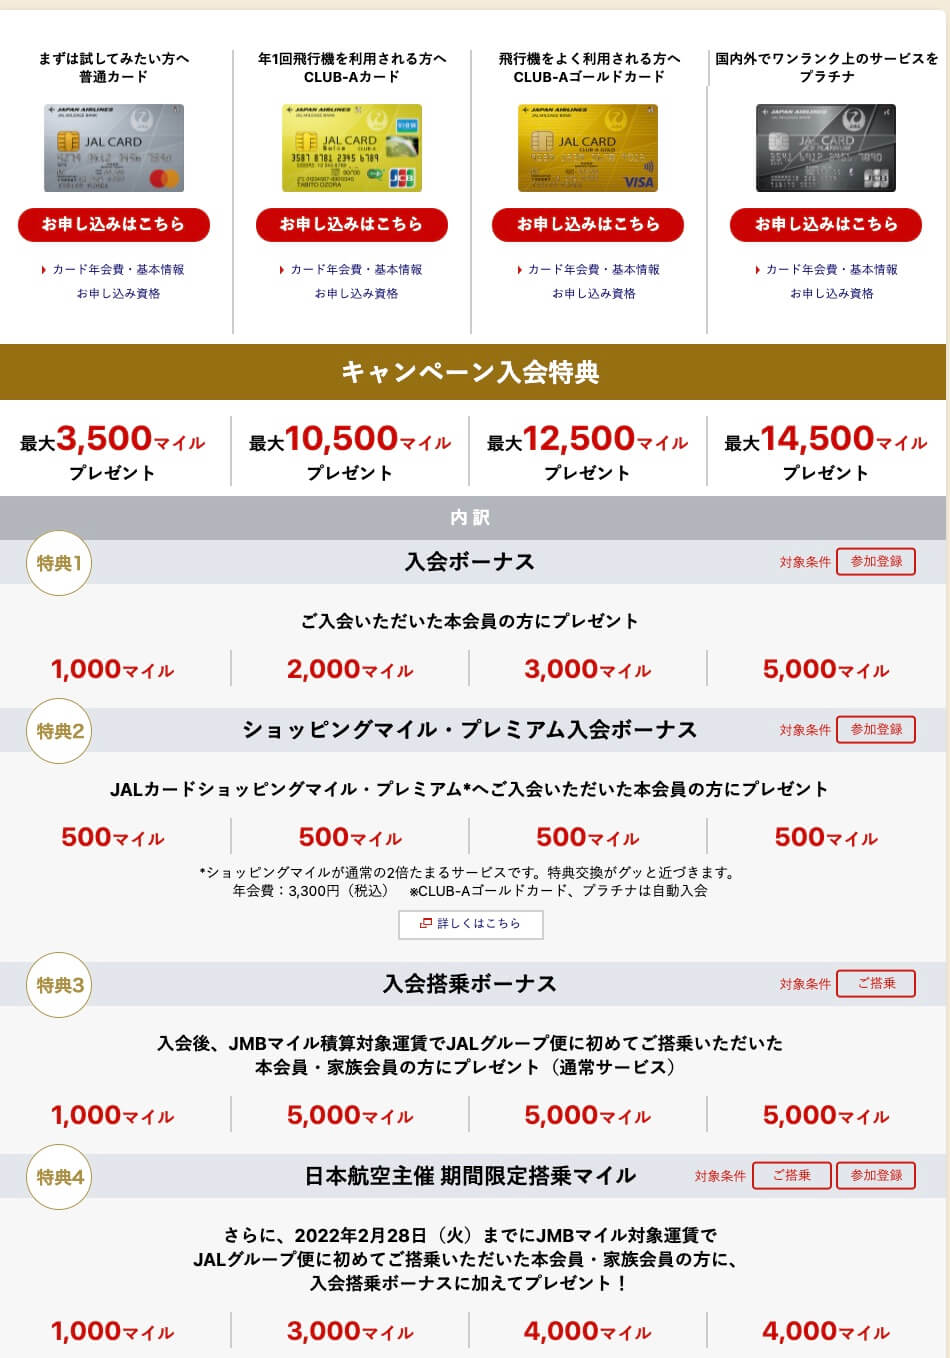 2021/10月JALカード入会キャンペーン4種類